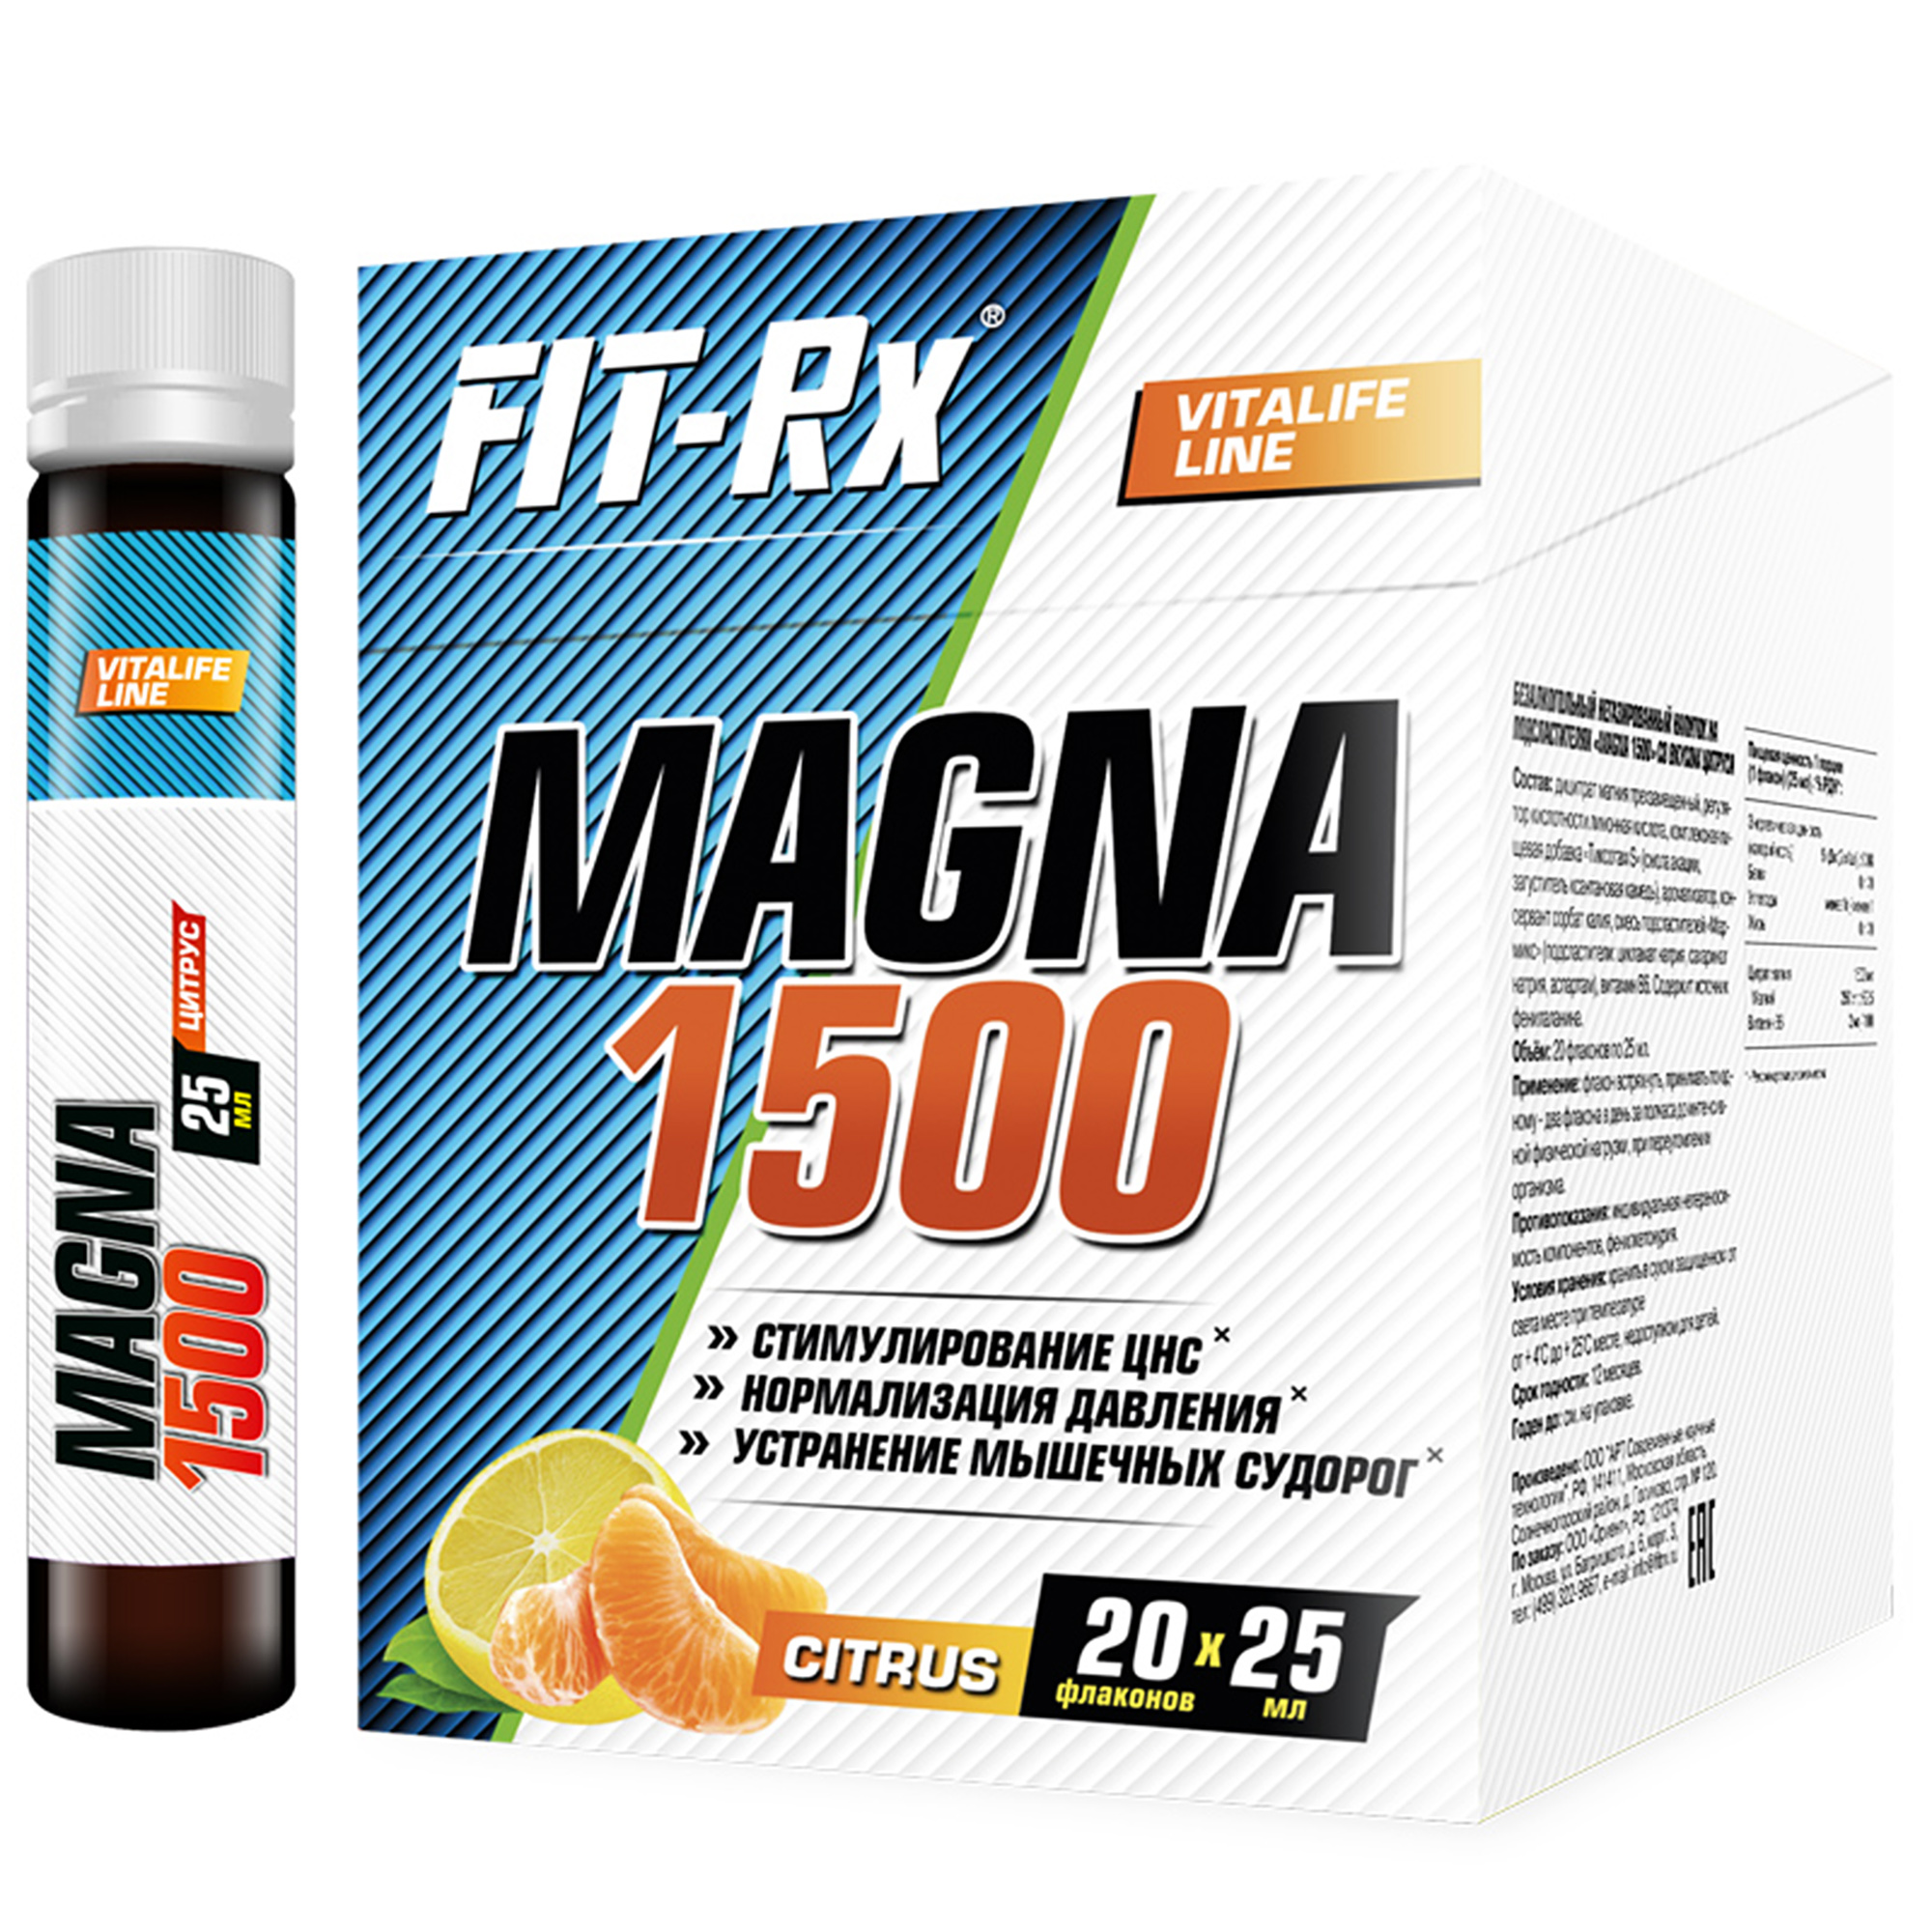 Цитрат магния и витамин В6 FIT-RX MAGNA 1500 цитрус, 20х25 мл